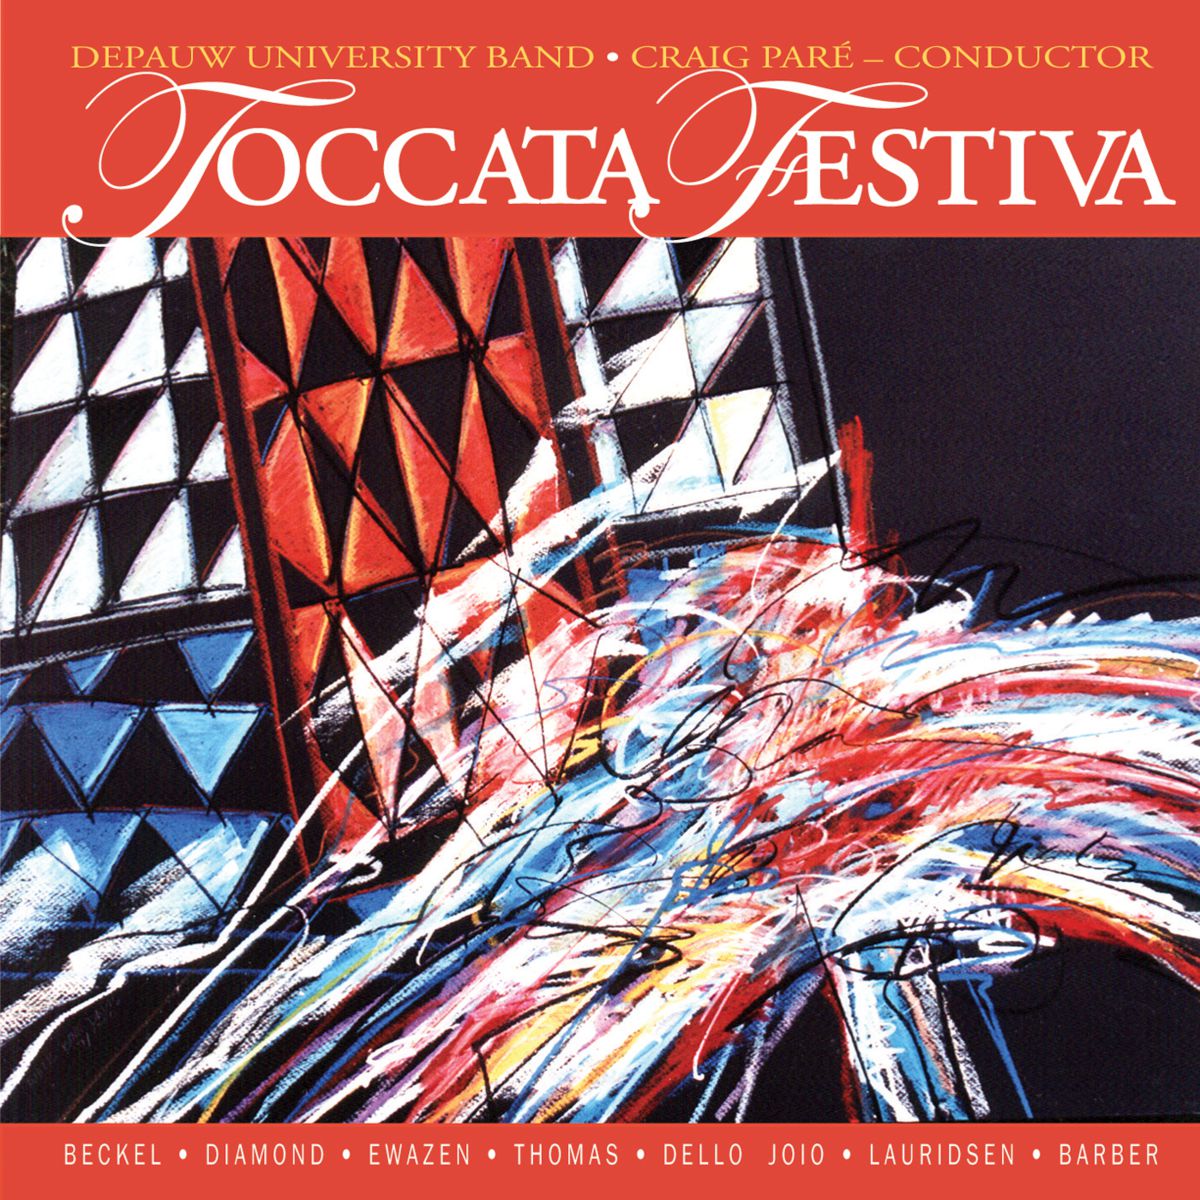 Toccata Festiva - click here